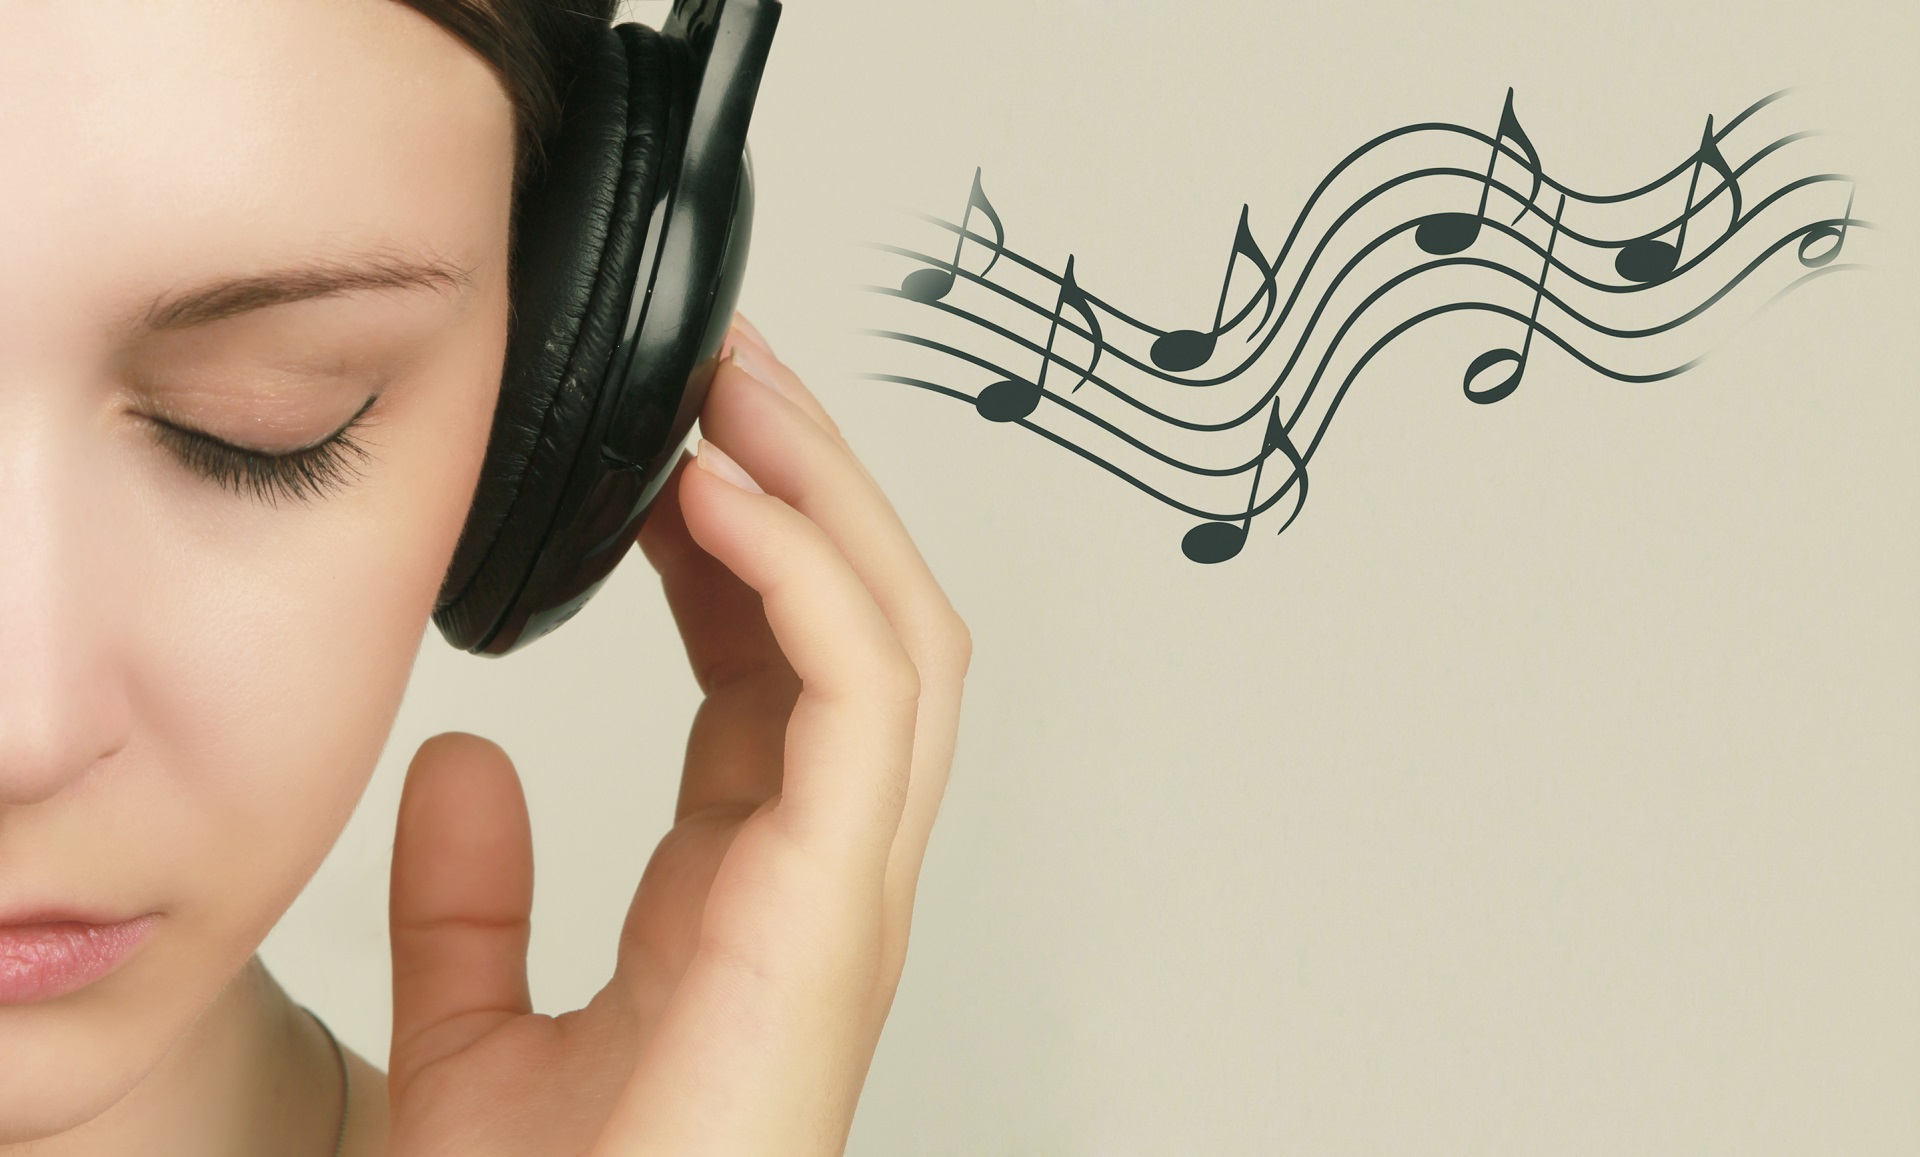 Music to Brain - 音頻對腦部療效